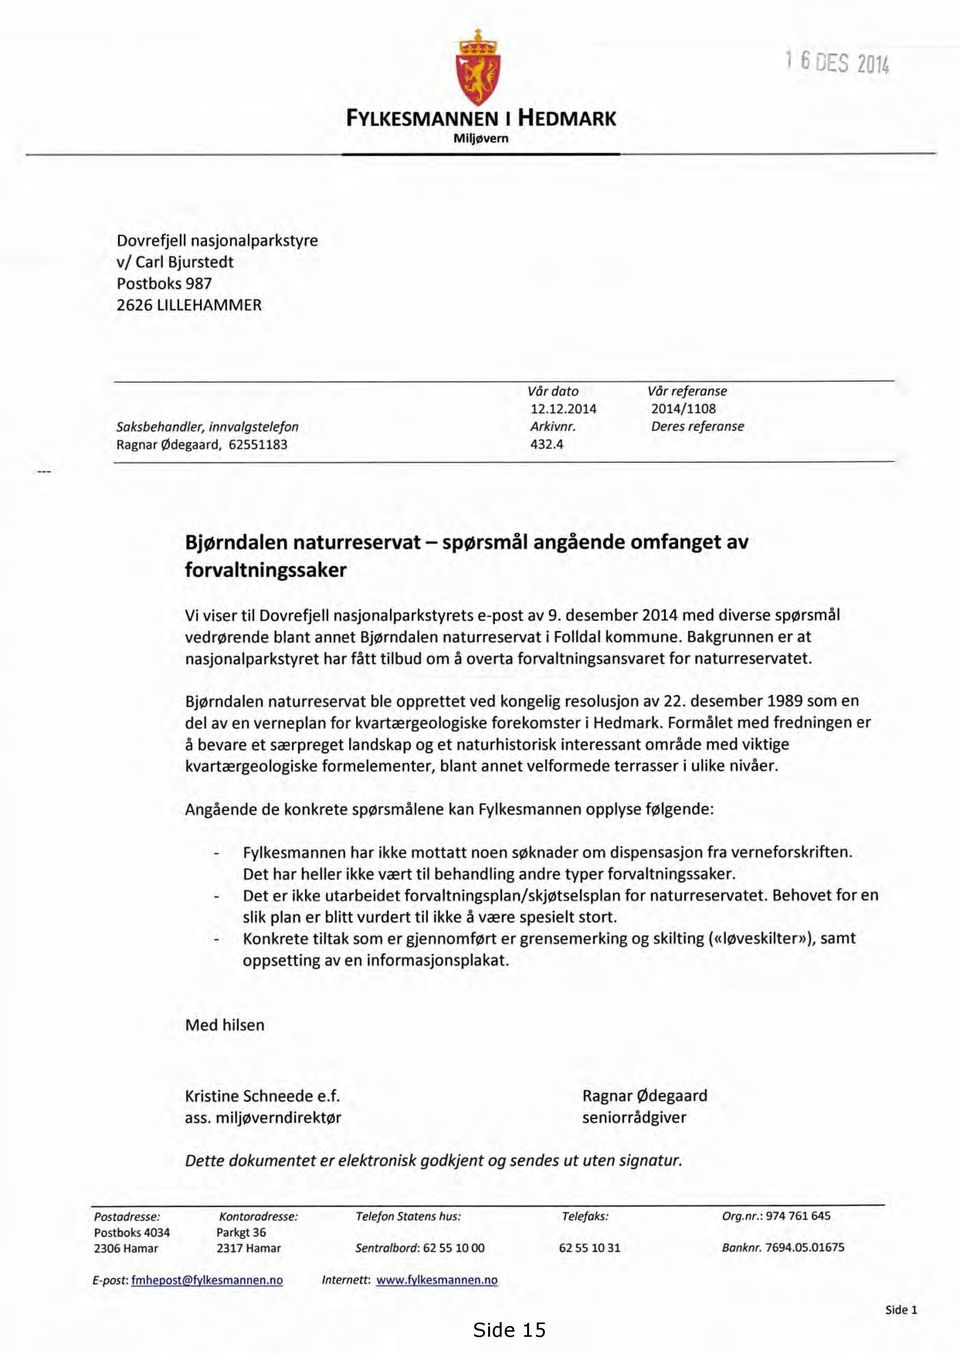 desember 2014 med diverse spørsmål vedrørende blant annet Bjørndalen naturreservat i Folldal kommune.